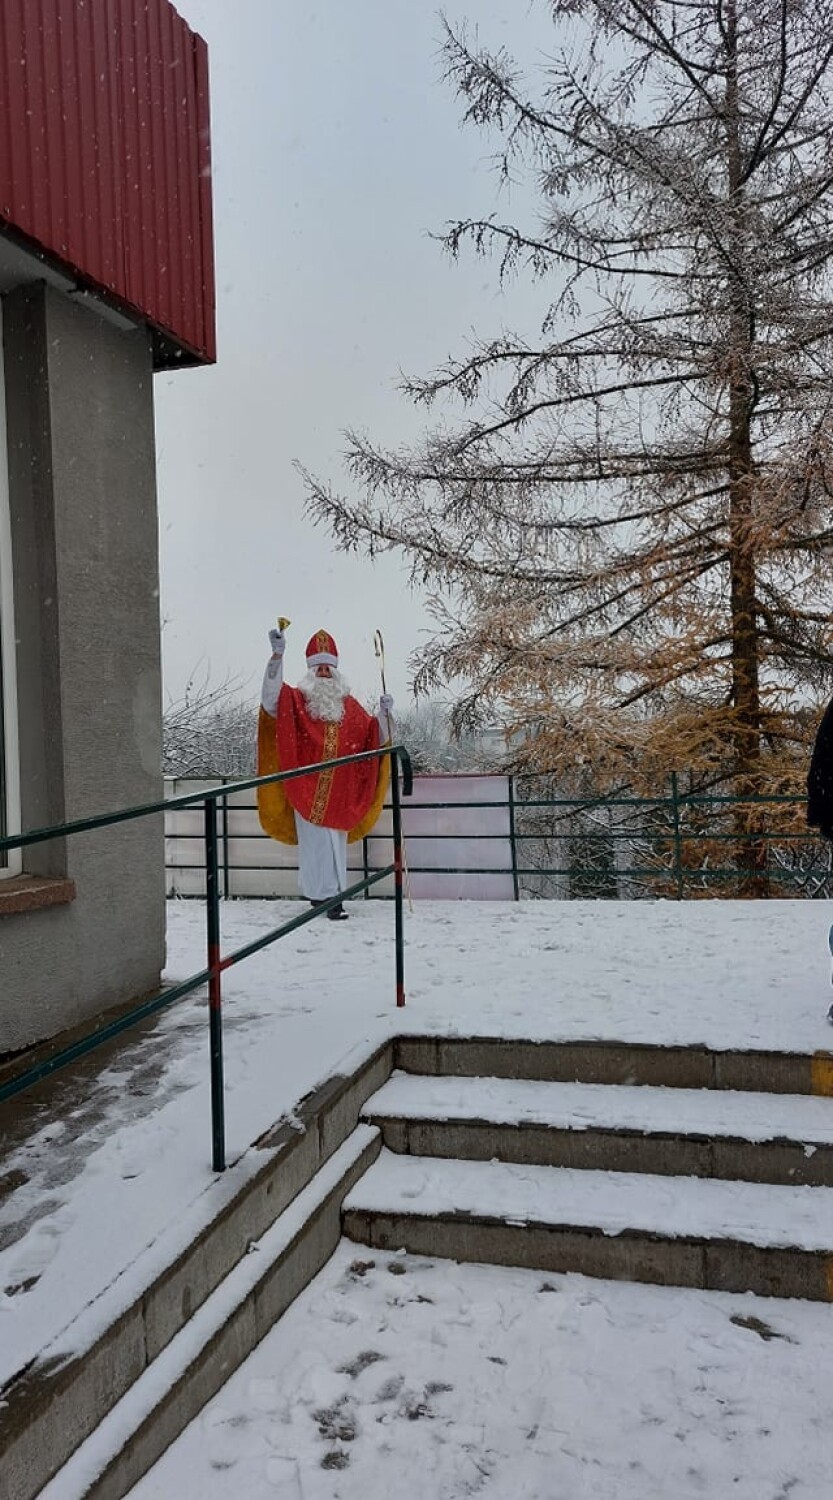 Święty Mikołaj odwiedził dzieci na osiedlu Kazanów w Przemyślu [ZDJĘCIA]